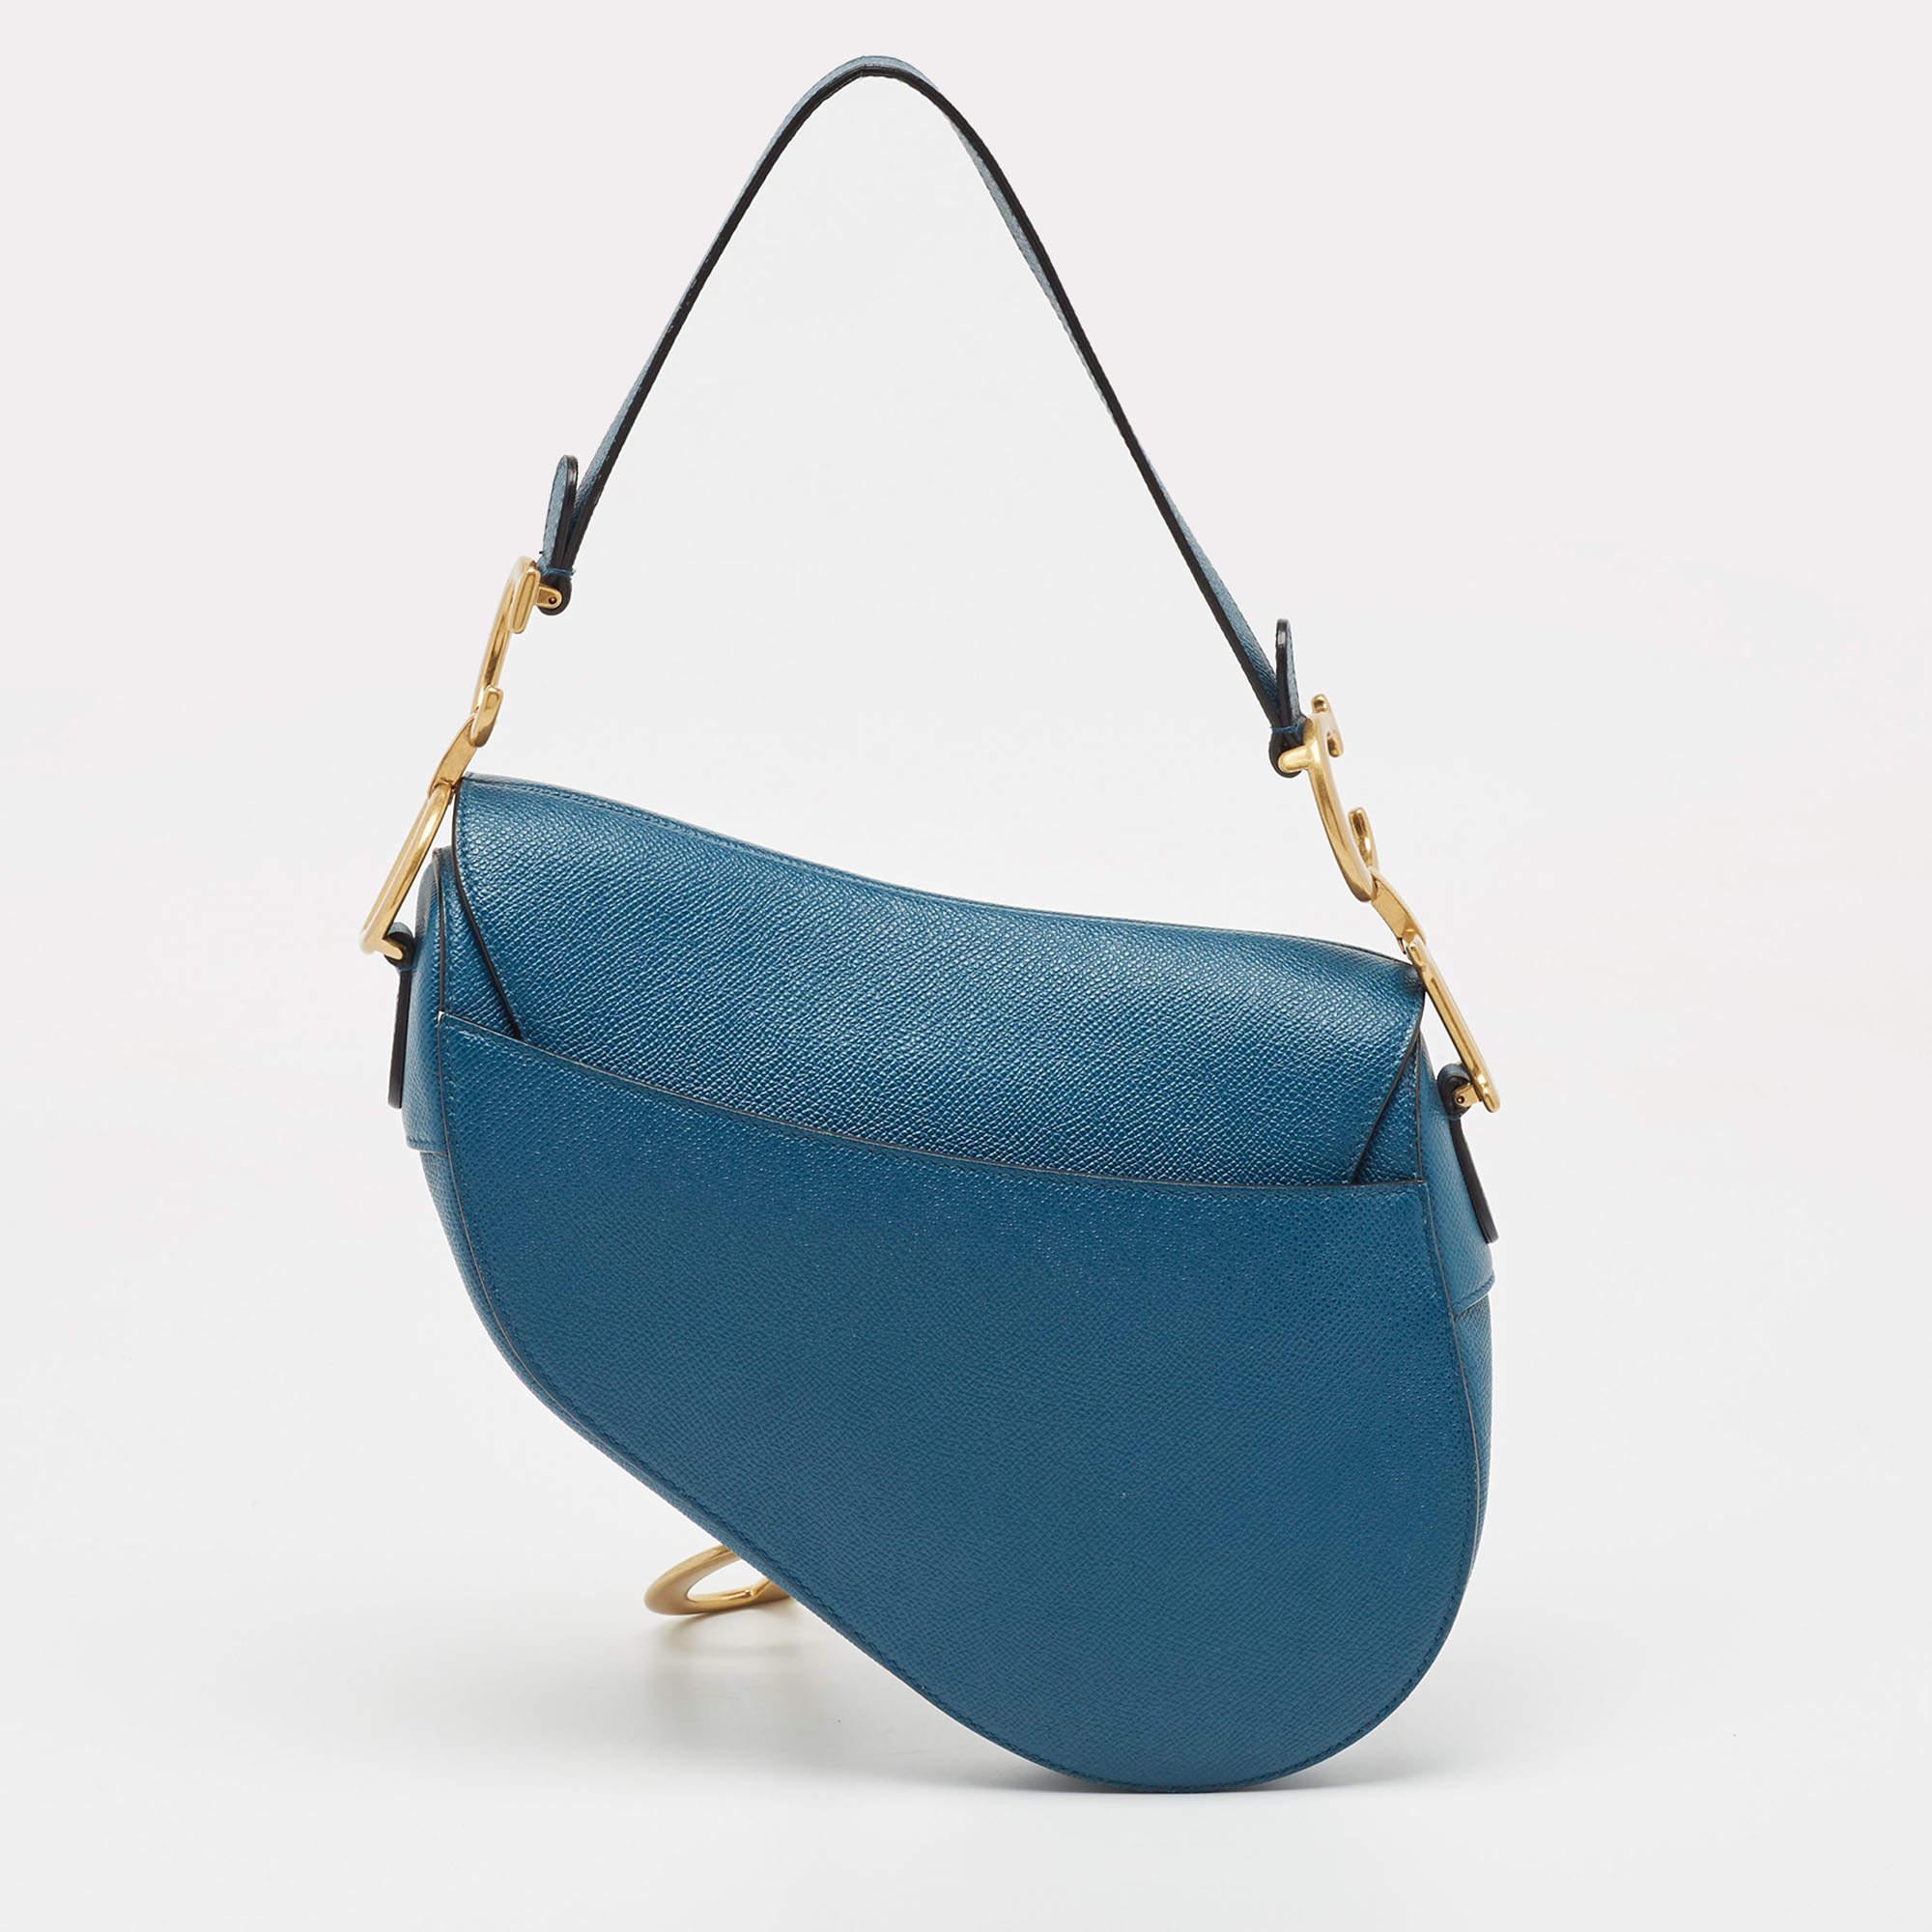 Ce sac à bandoulière Dior Saddle est idéal pour ranger vos affaires essentielles en un seul endroit. Il présente des détails remarquables et offre un aspect de luxe.

Comprend : Bandoulière brodée Dior